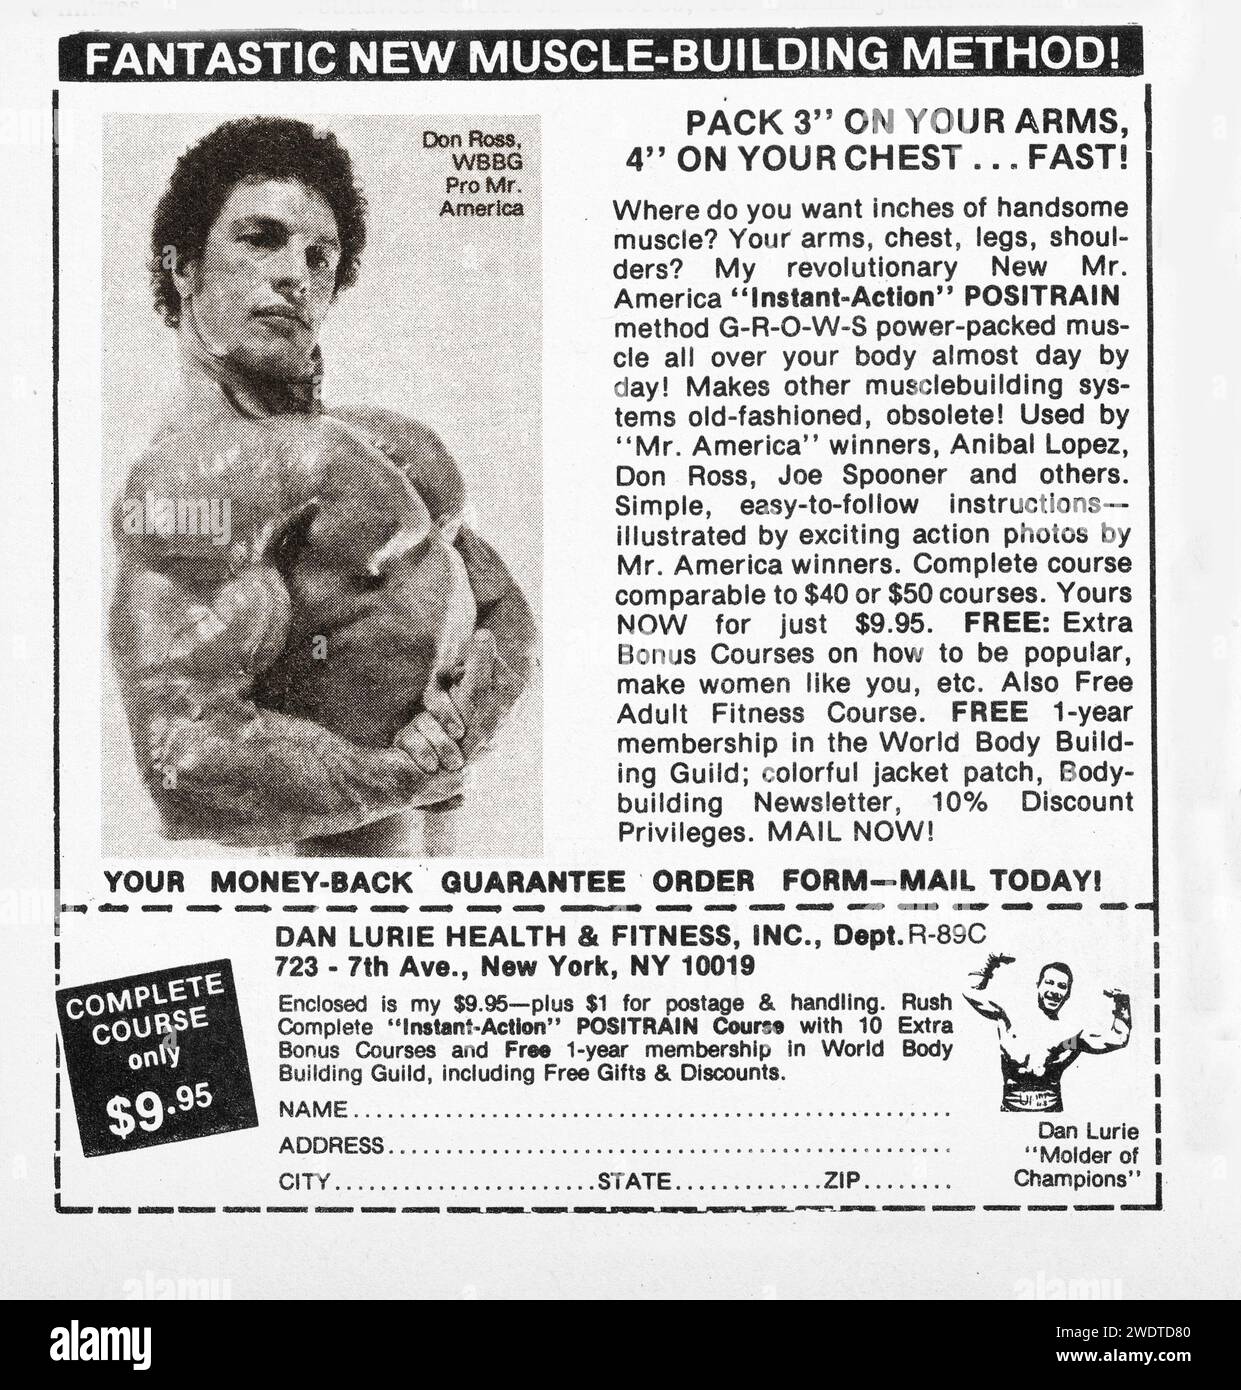 Une annonce de culturisme Dan Lurie dans un magazine sportif de la fin des années 1970 offrant son cours Instant action Positrain. Généreusement, ils jettent dans une adhésion gratuite de 1 ans à la World Bodybuilding Guild. Banque D'Images